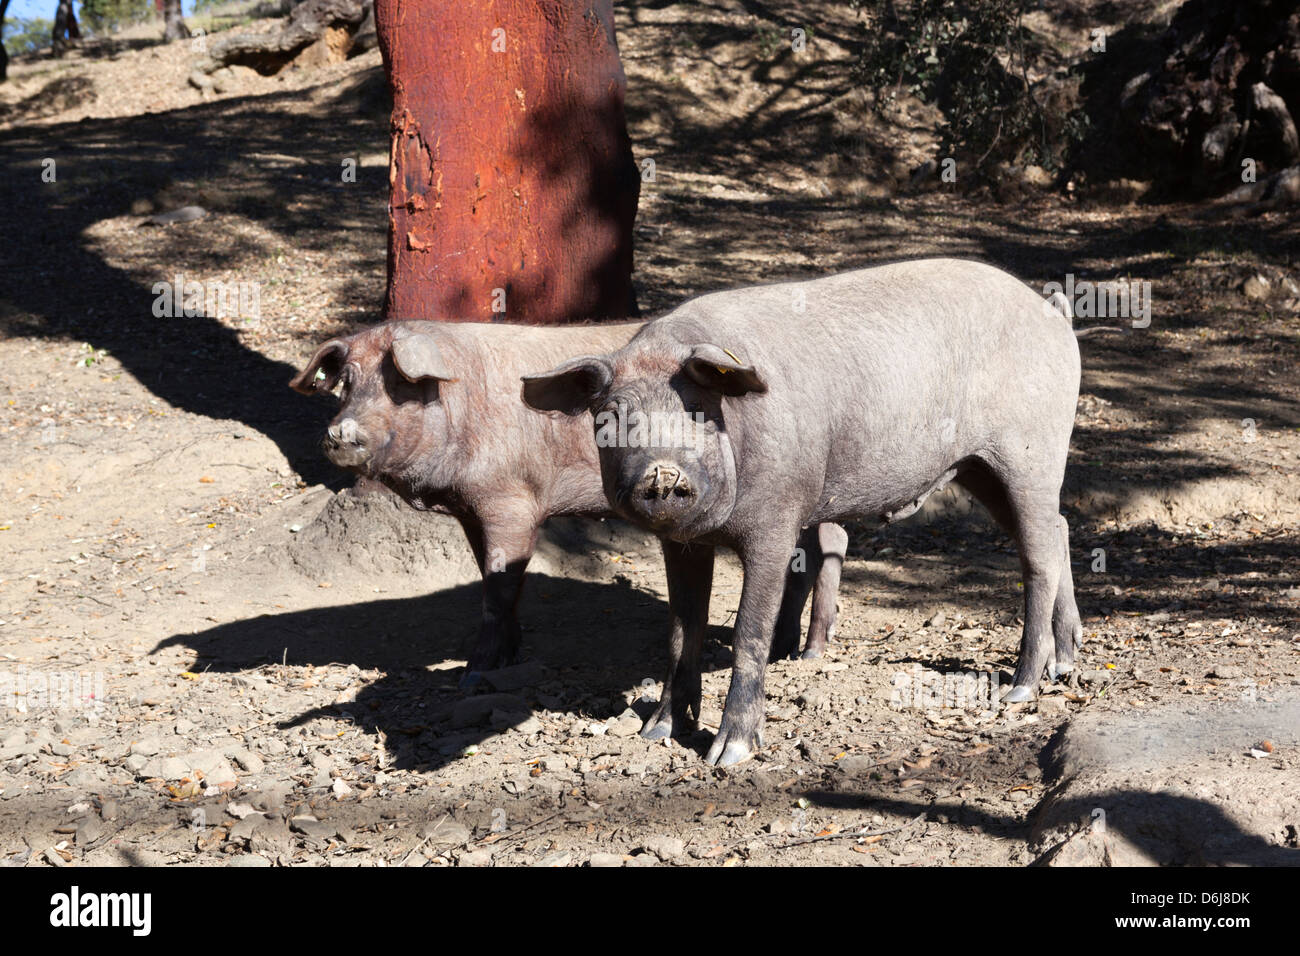 Les porcs noirs ibériques, Aracena, Sierra Morena, Huelva, Andalousie, Espagne, Europe Banque D'Images